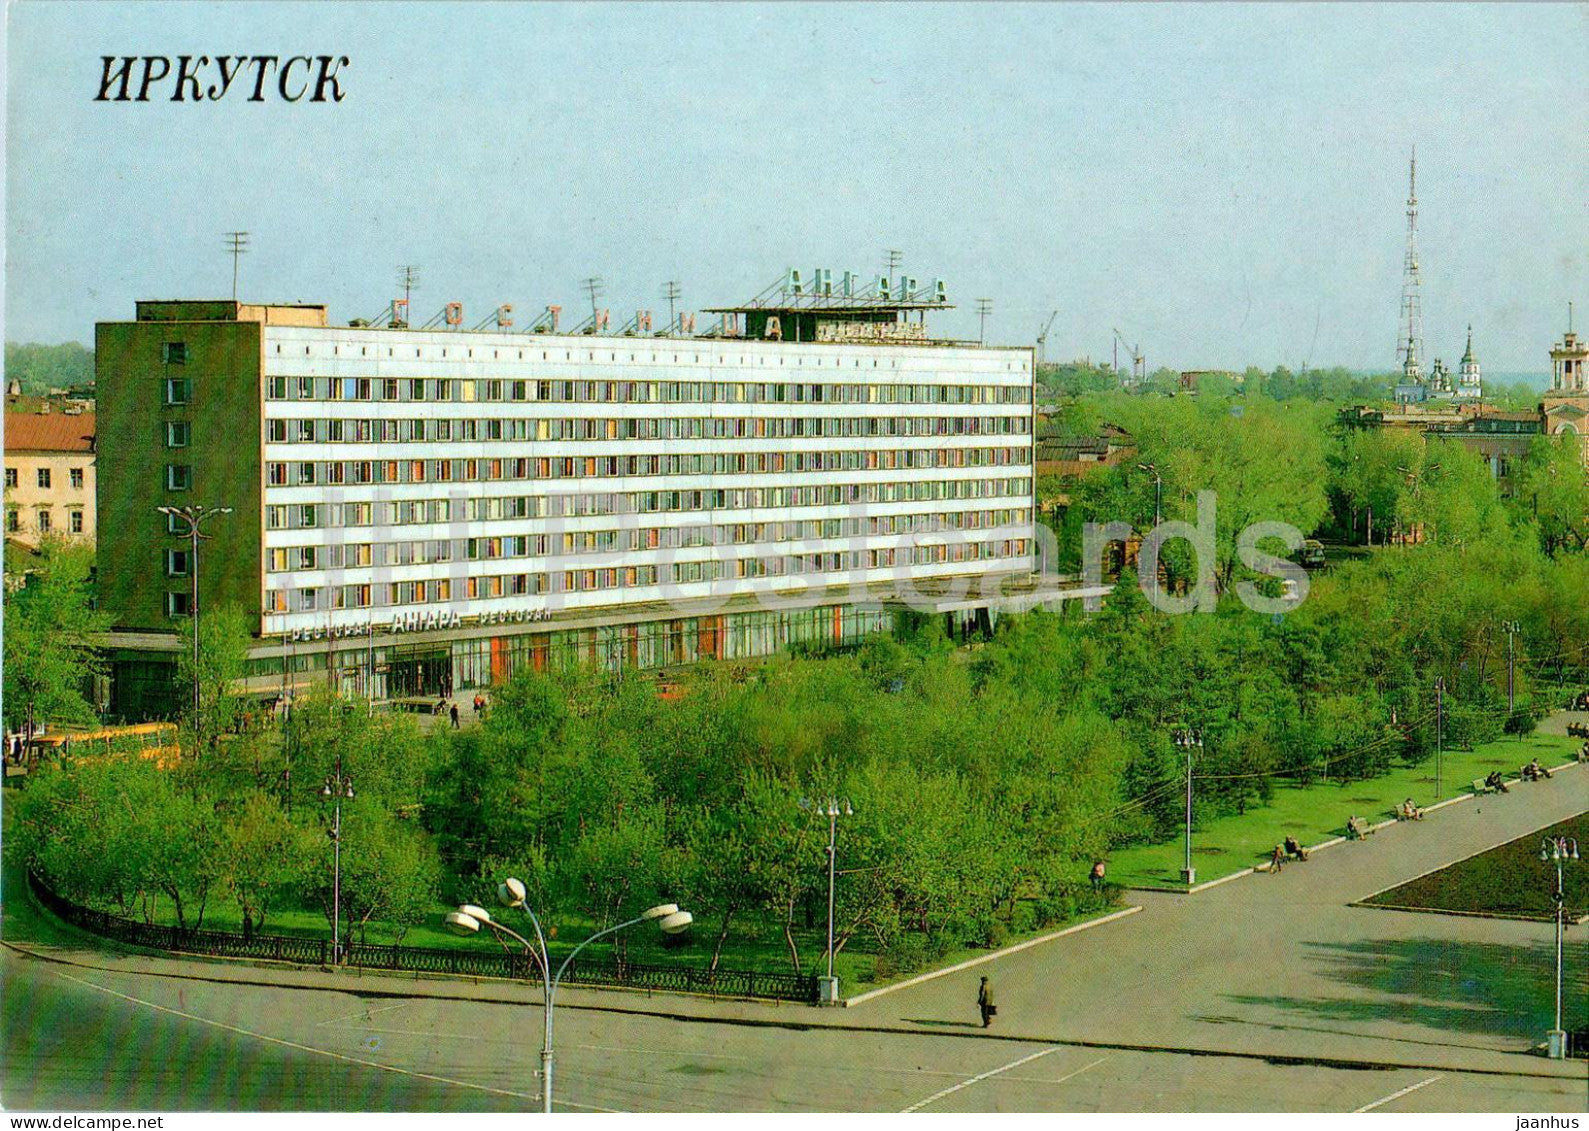 Irkutsk - hotel Angara - 1990 - Russia USSR - unused - JH Postcards